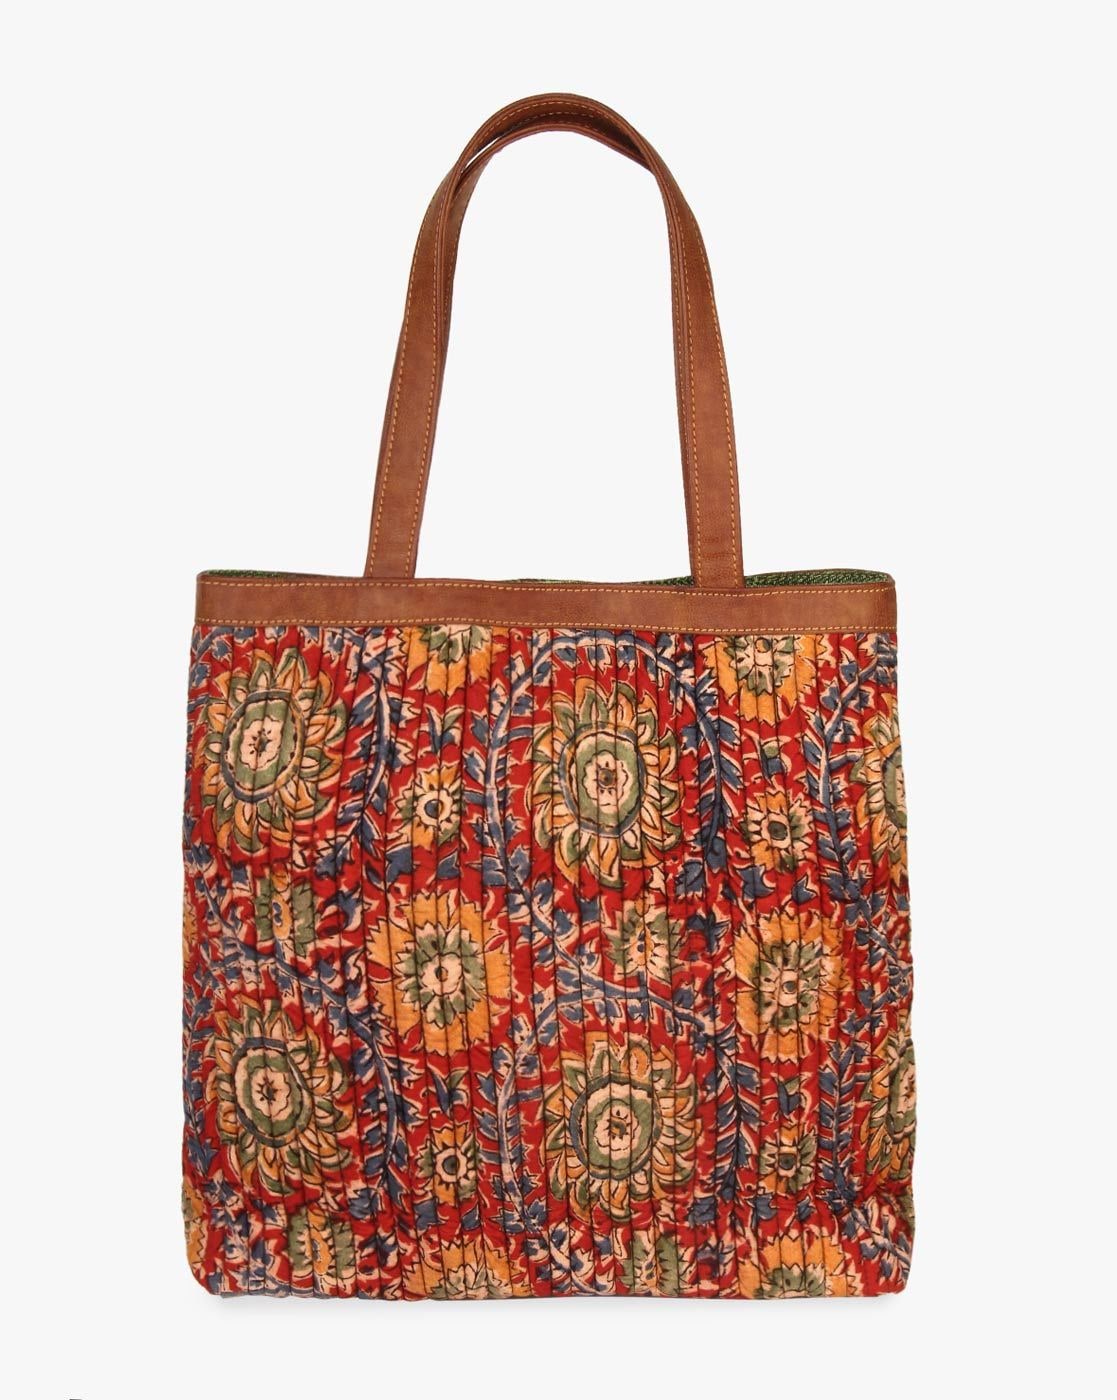 Buy Tote Bag/kalamkari Print Bag/ Burlap Tote/natural Material  Shoulderbag/handmade.handprint Online in India - Etsy